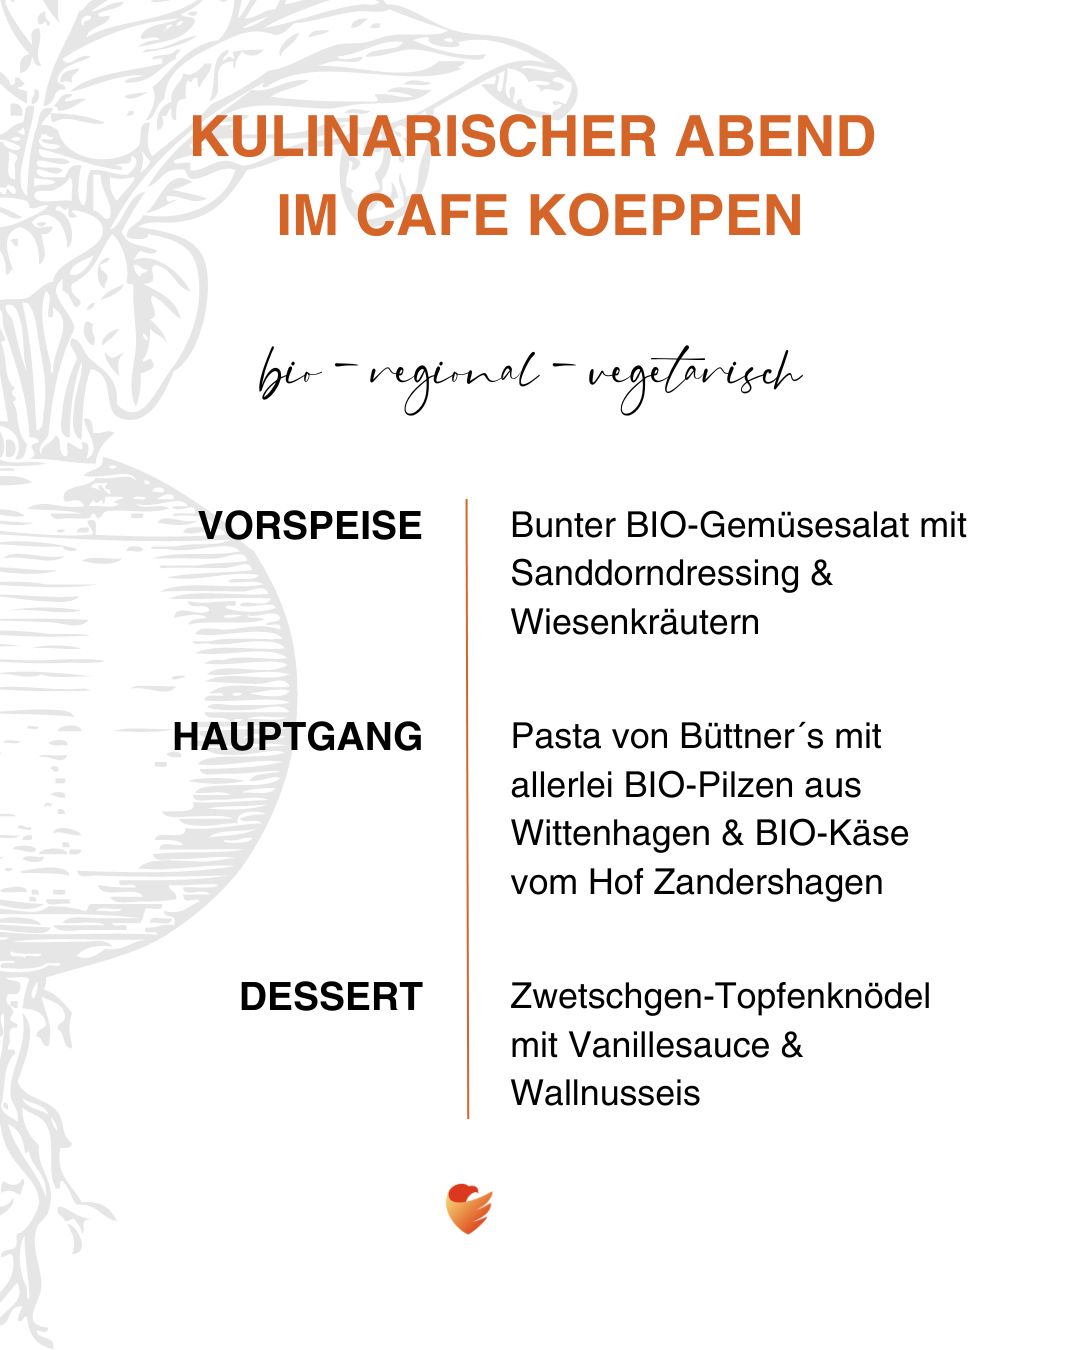 Kulinarischer Abend im Café Koeppen | August